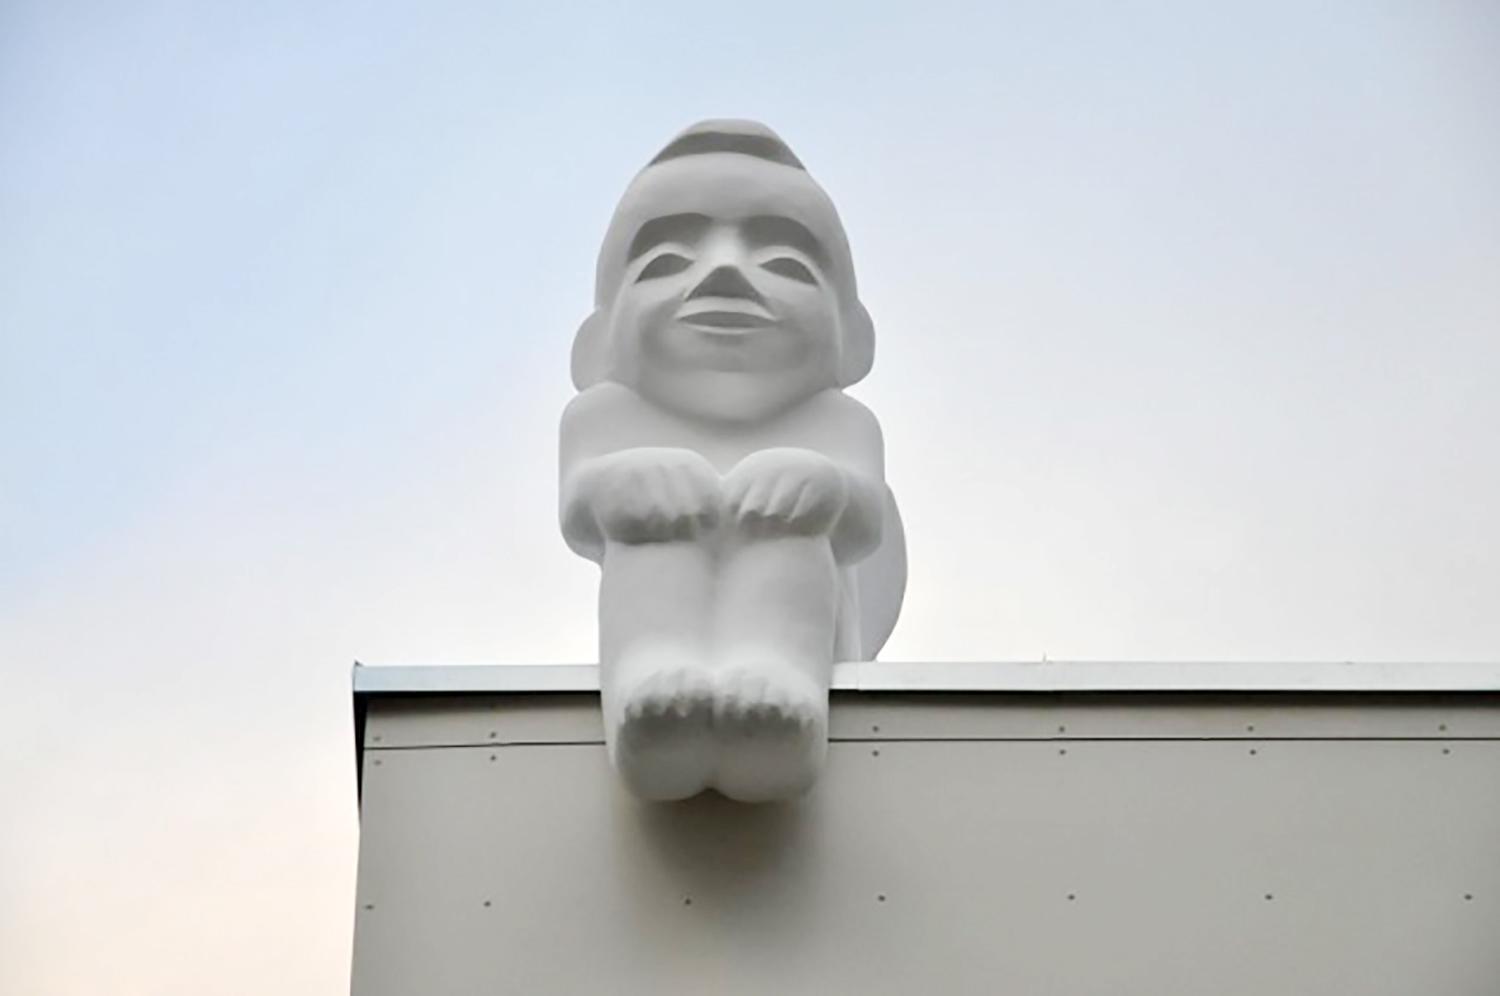 Visuomenės angelams sargams – angelo skulptūra / Tokie skulptoriaus V. Ramoškos angelai tapo Vilniaus simboliu. Jų galima rasti ant balkonų